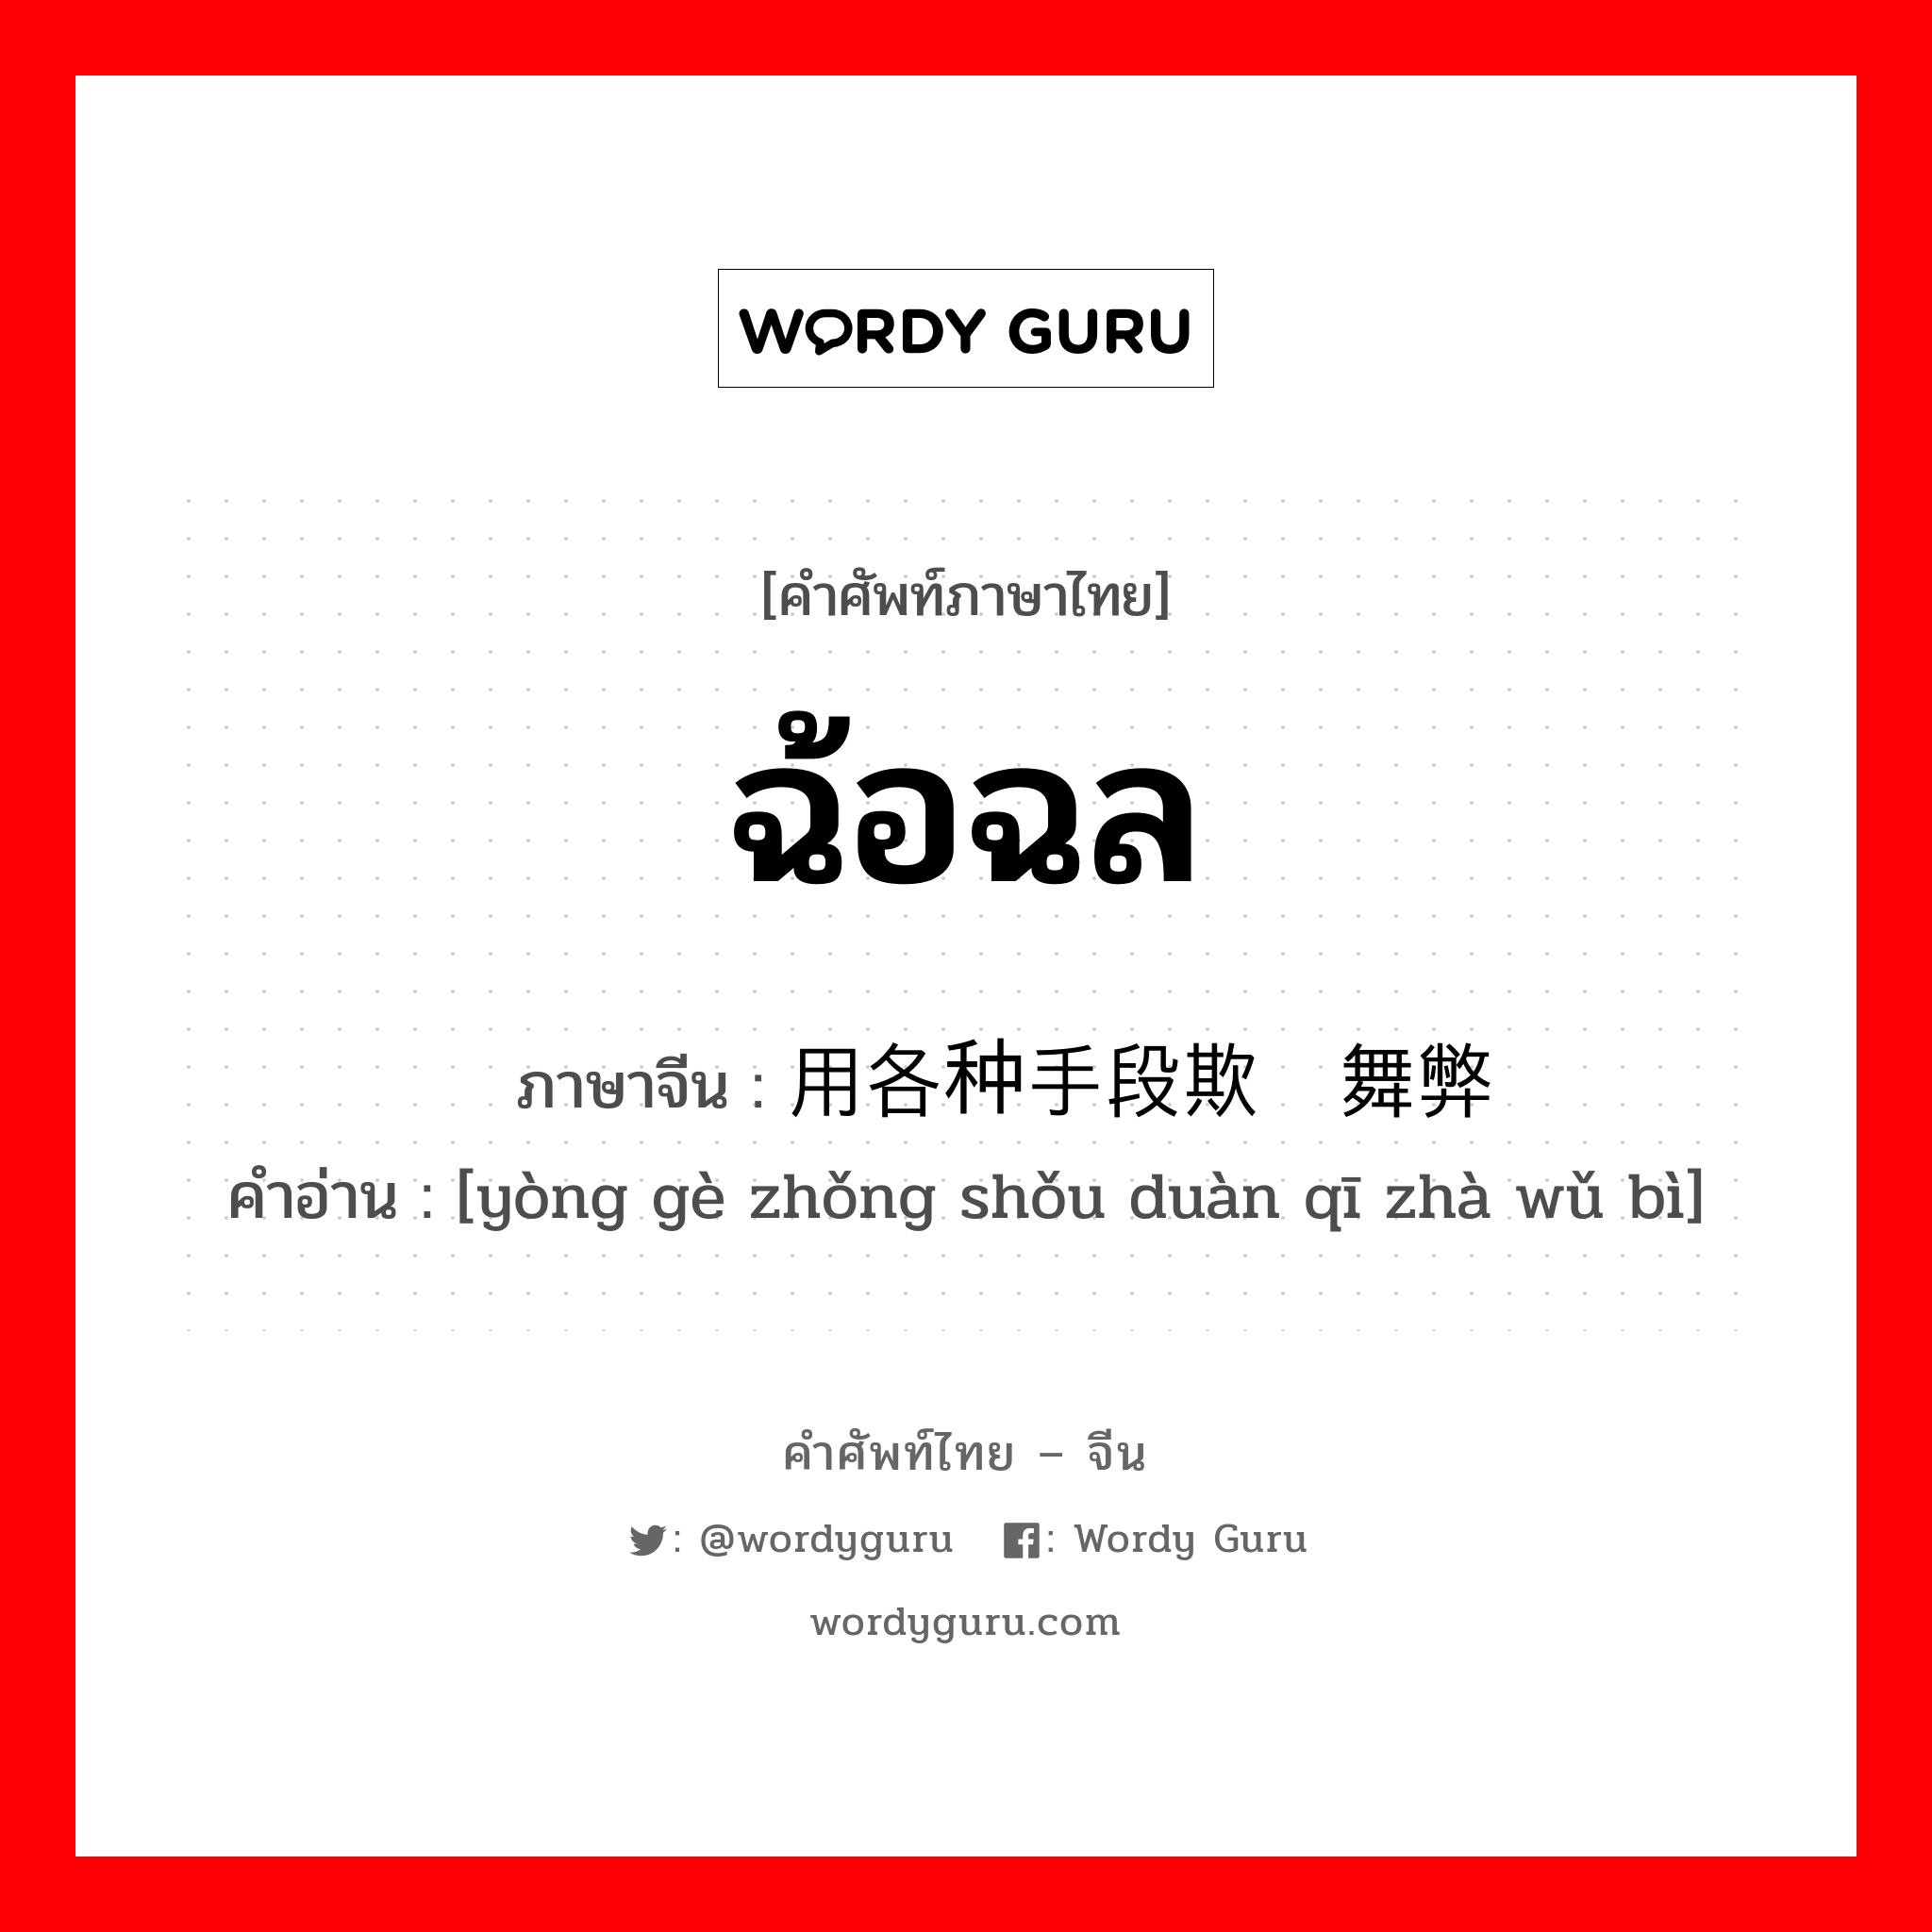 ฉ้อฉล ภาษาจีนคืออะไร, คำศัพท์ภาษาไทย - จีน ฉ้อฉล ภาษาจีน 用各种手段欺诈舞弊 คำอ่าน [yòng gè zhǒng shǒu duàn qī zhà wǔ bì]